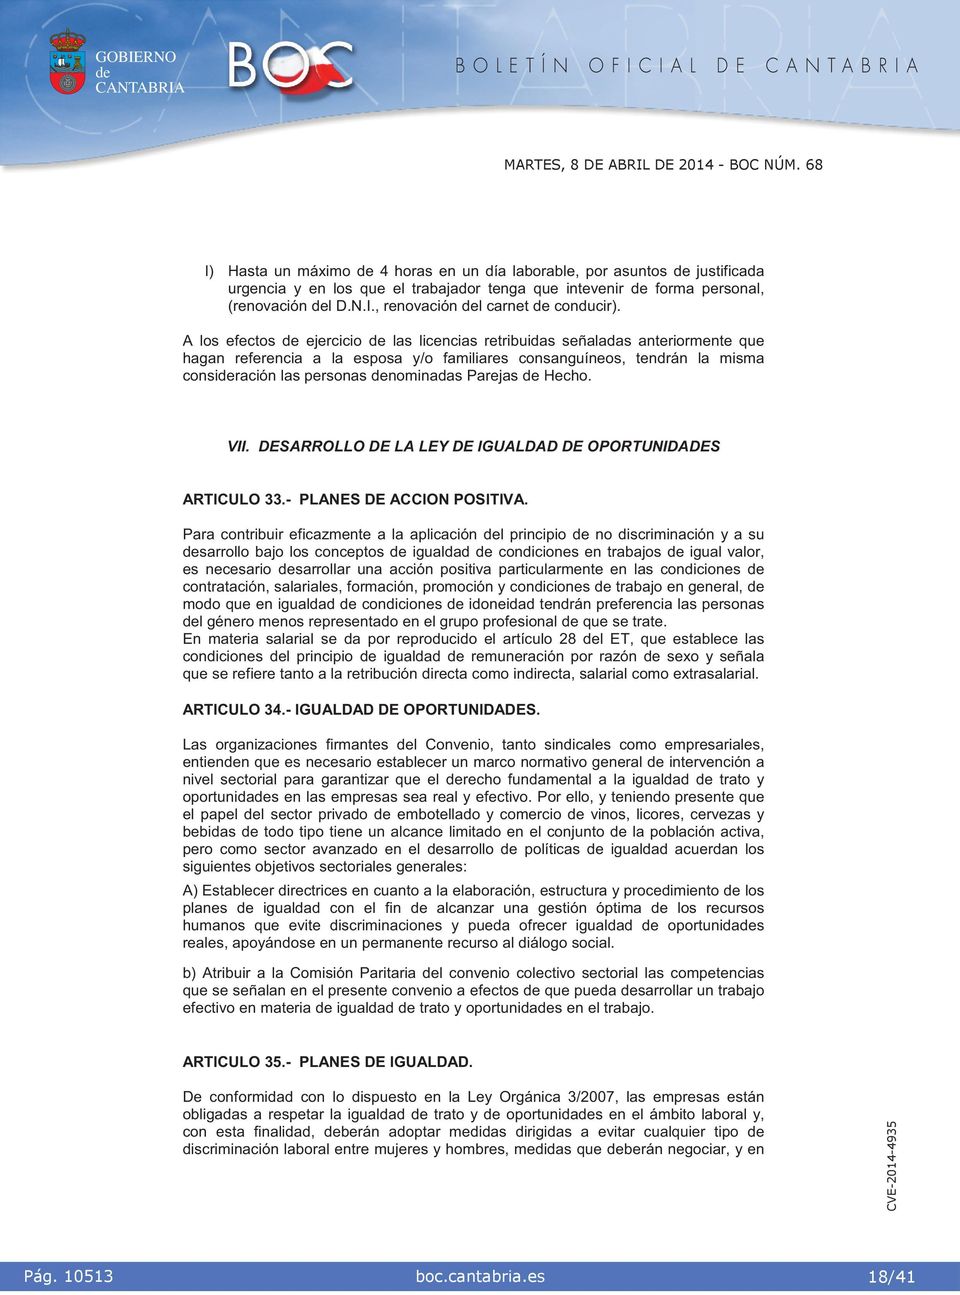 DESARROLLO DE LA LEY DE IGUALDAD DE OPORTUNIDADES ARTICULO 33.- PLANES DE ACCION POSITIVA.